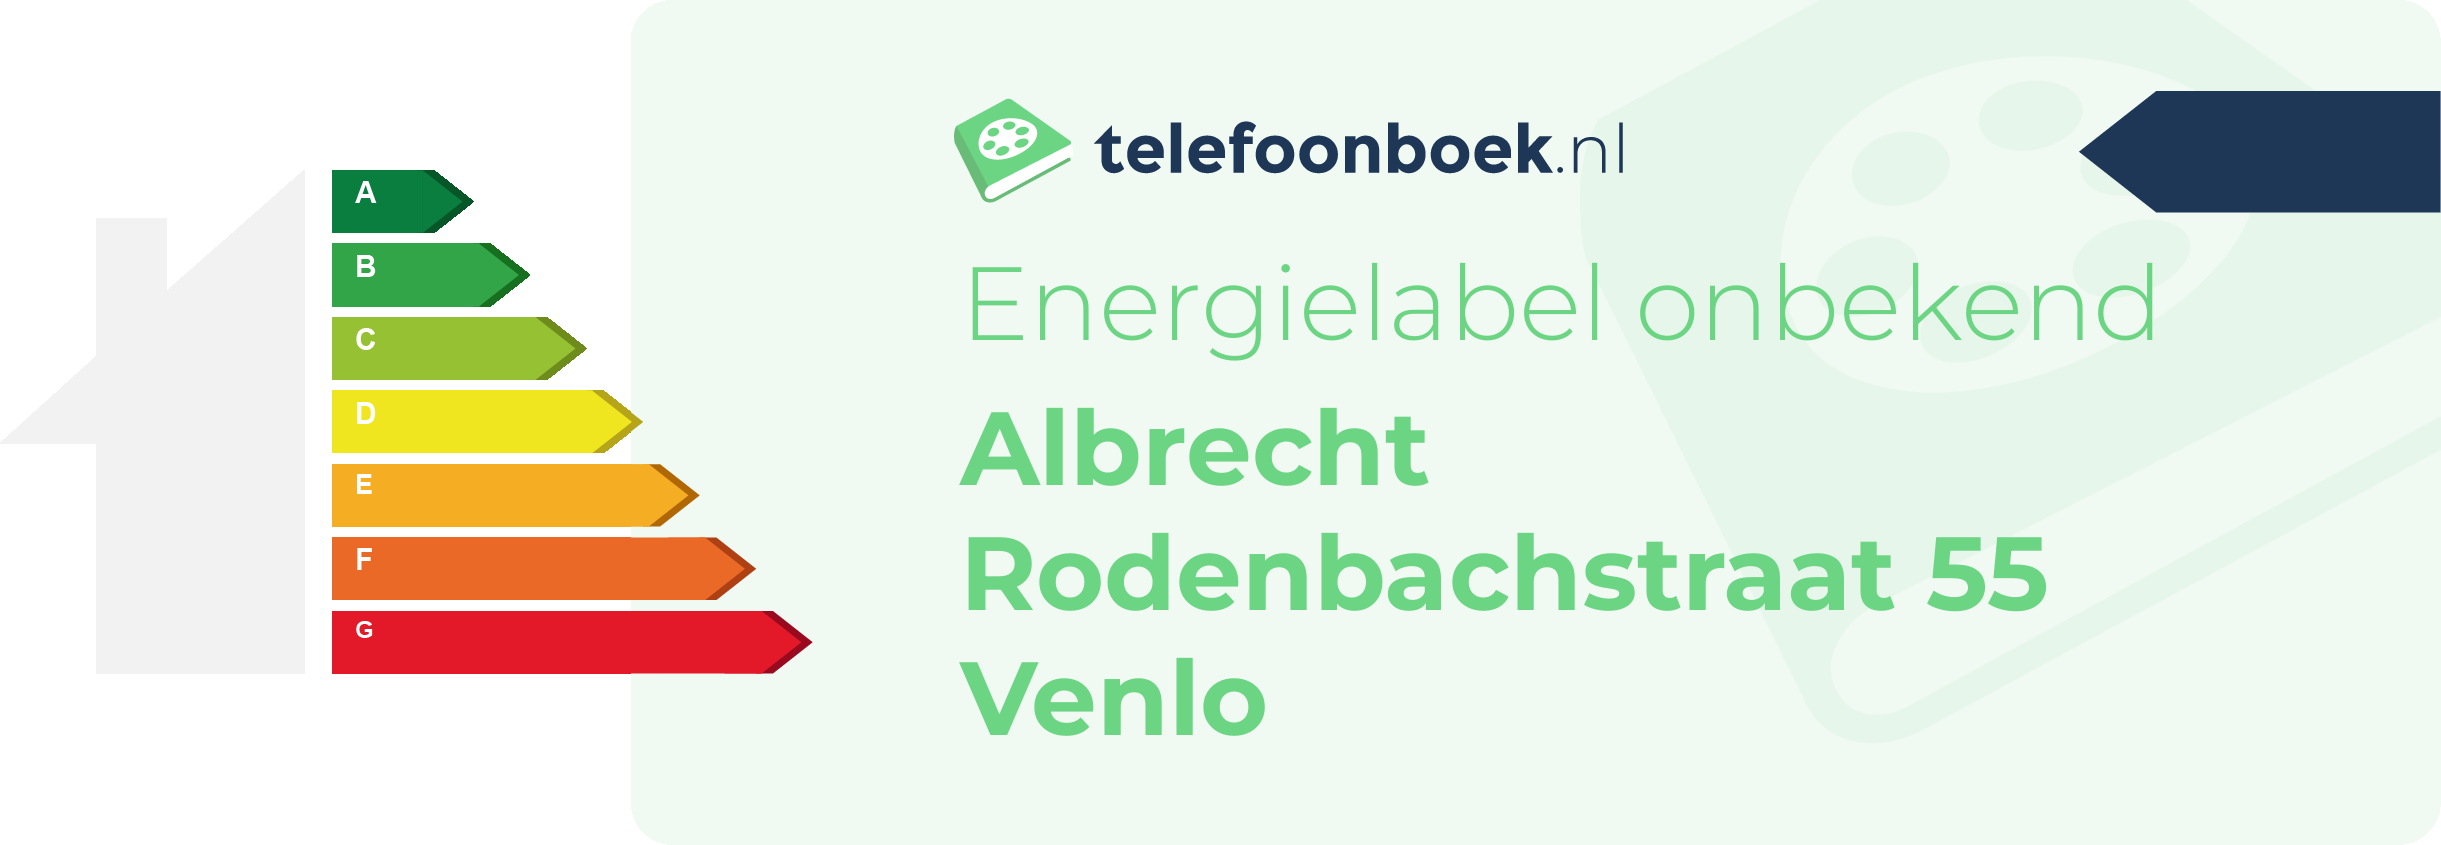 Energielabel Albrecht Rodenbachstraat 55 Venlo